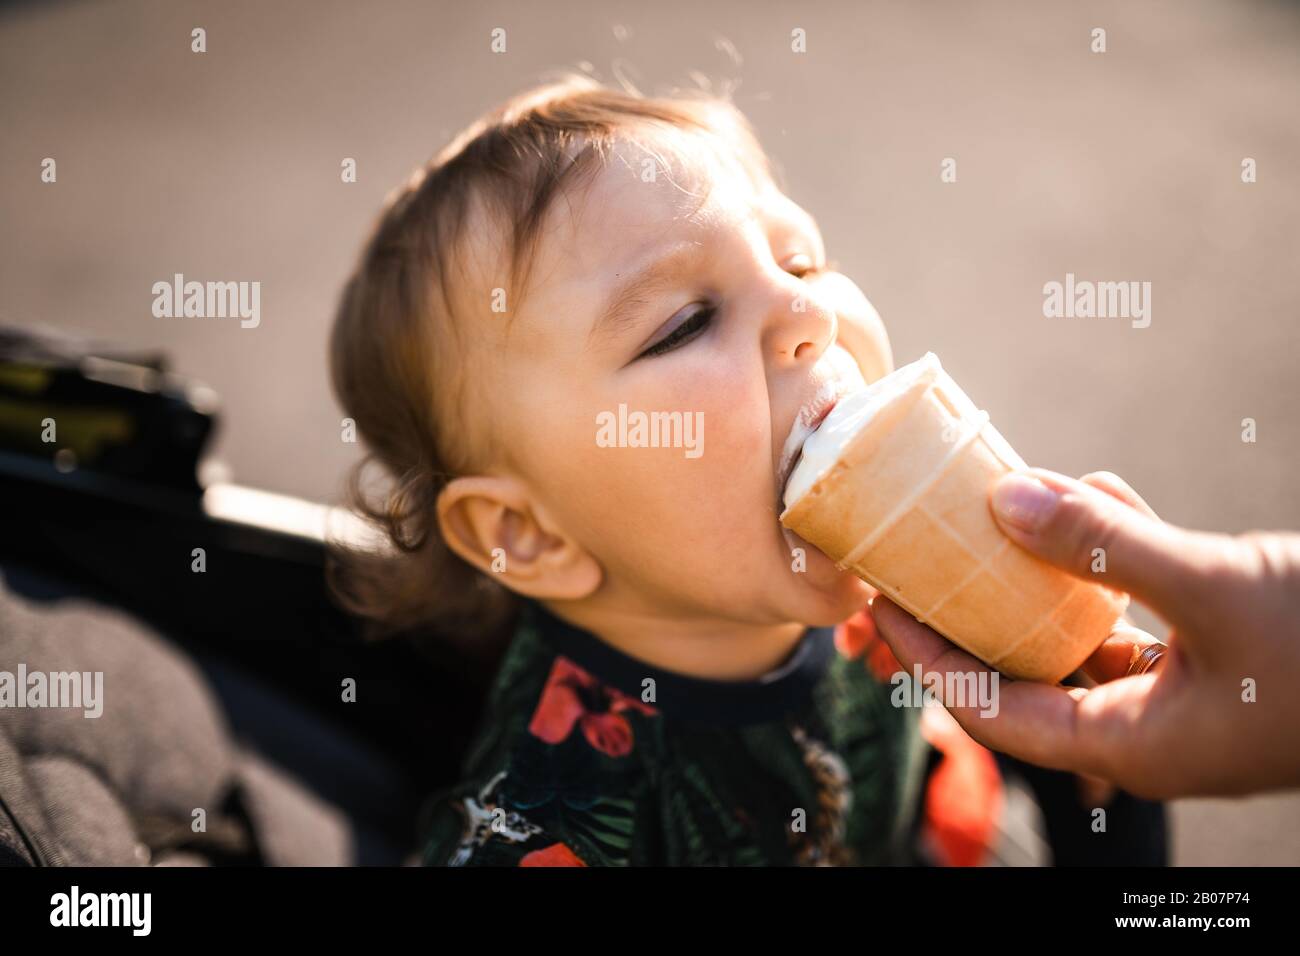 Mutter füttert Baby Kind Junge Eiscreme - Junge Mutter und ihr Baby essen weißes Vanille cremig Dessert - Sitzt in einem Babywagen Kinderwagen - kaukasische Familie 1 Stockfoto